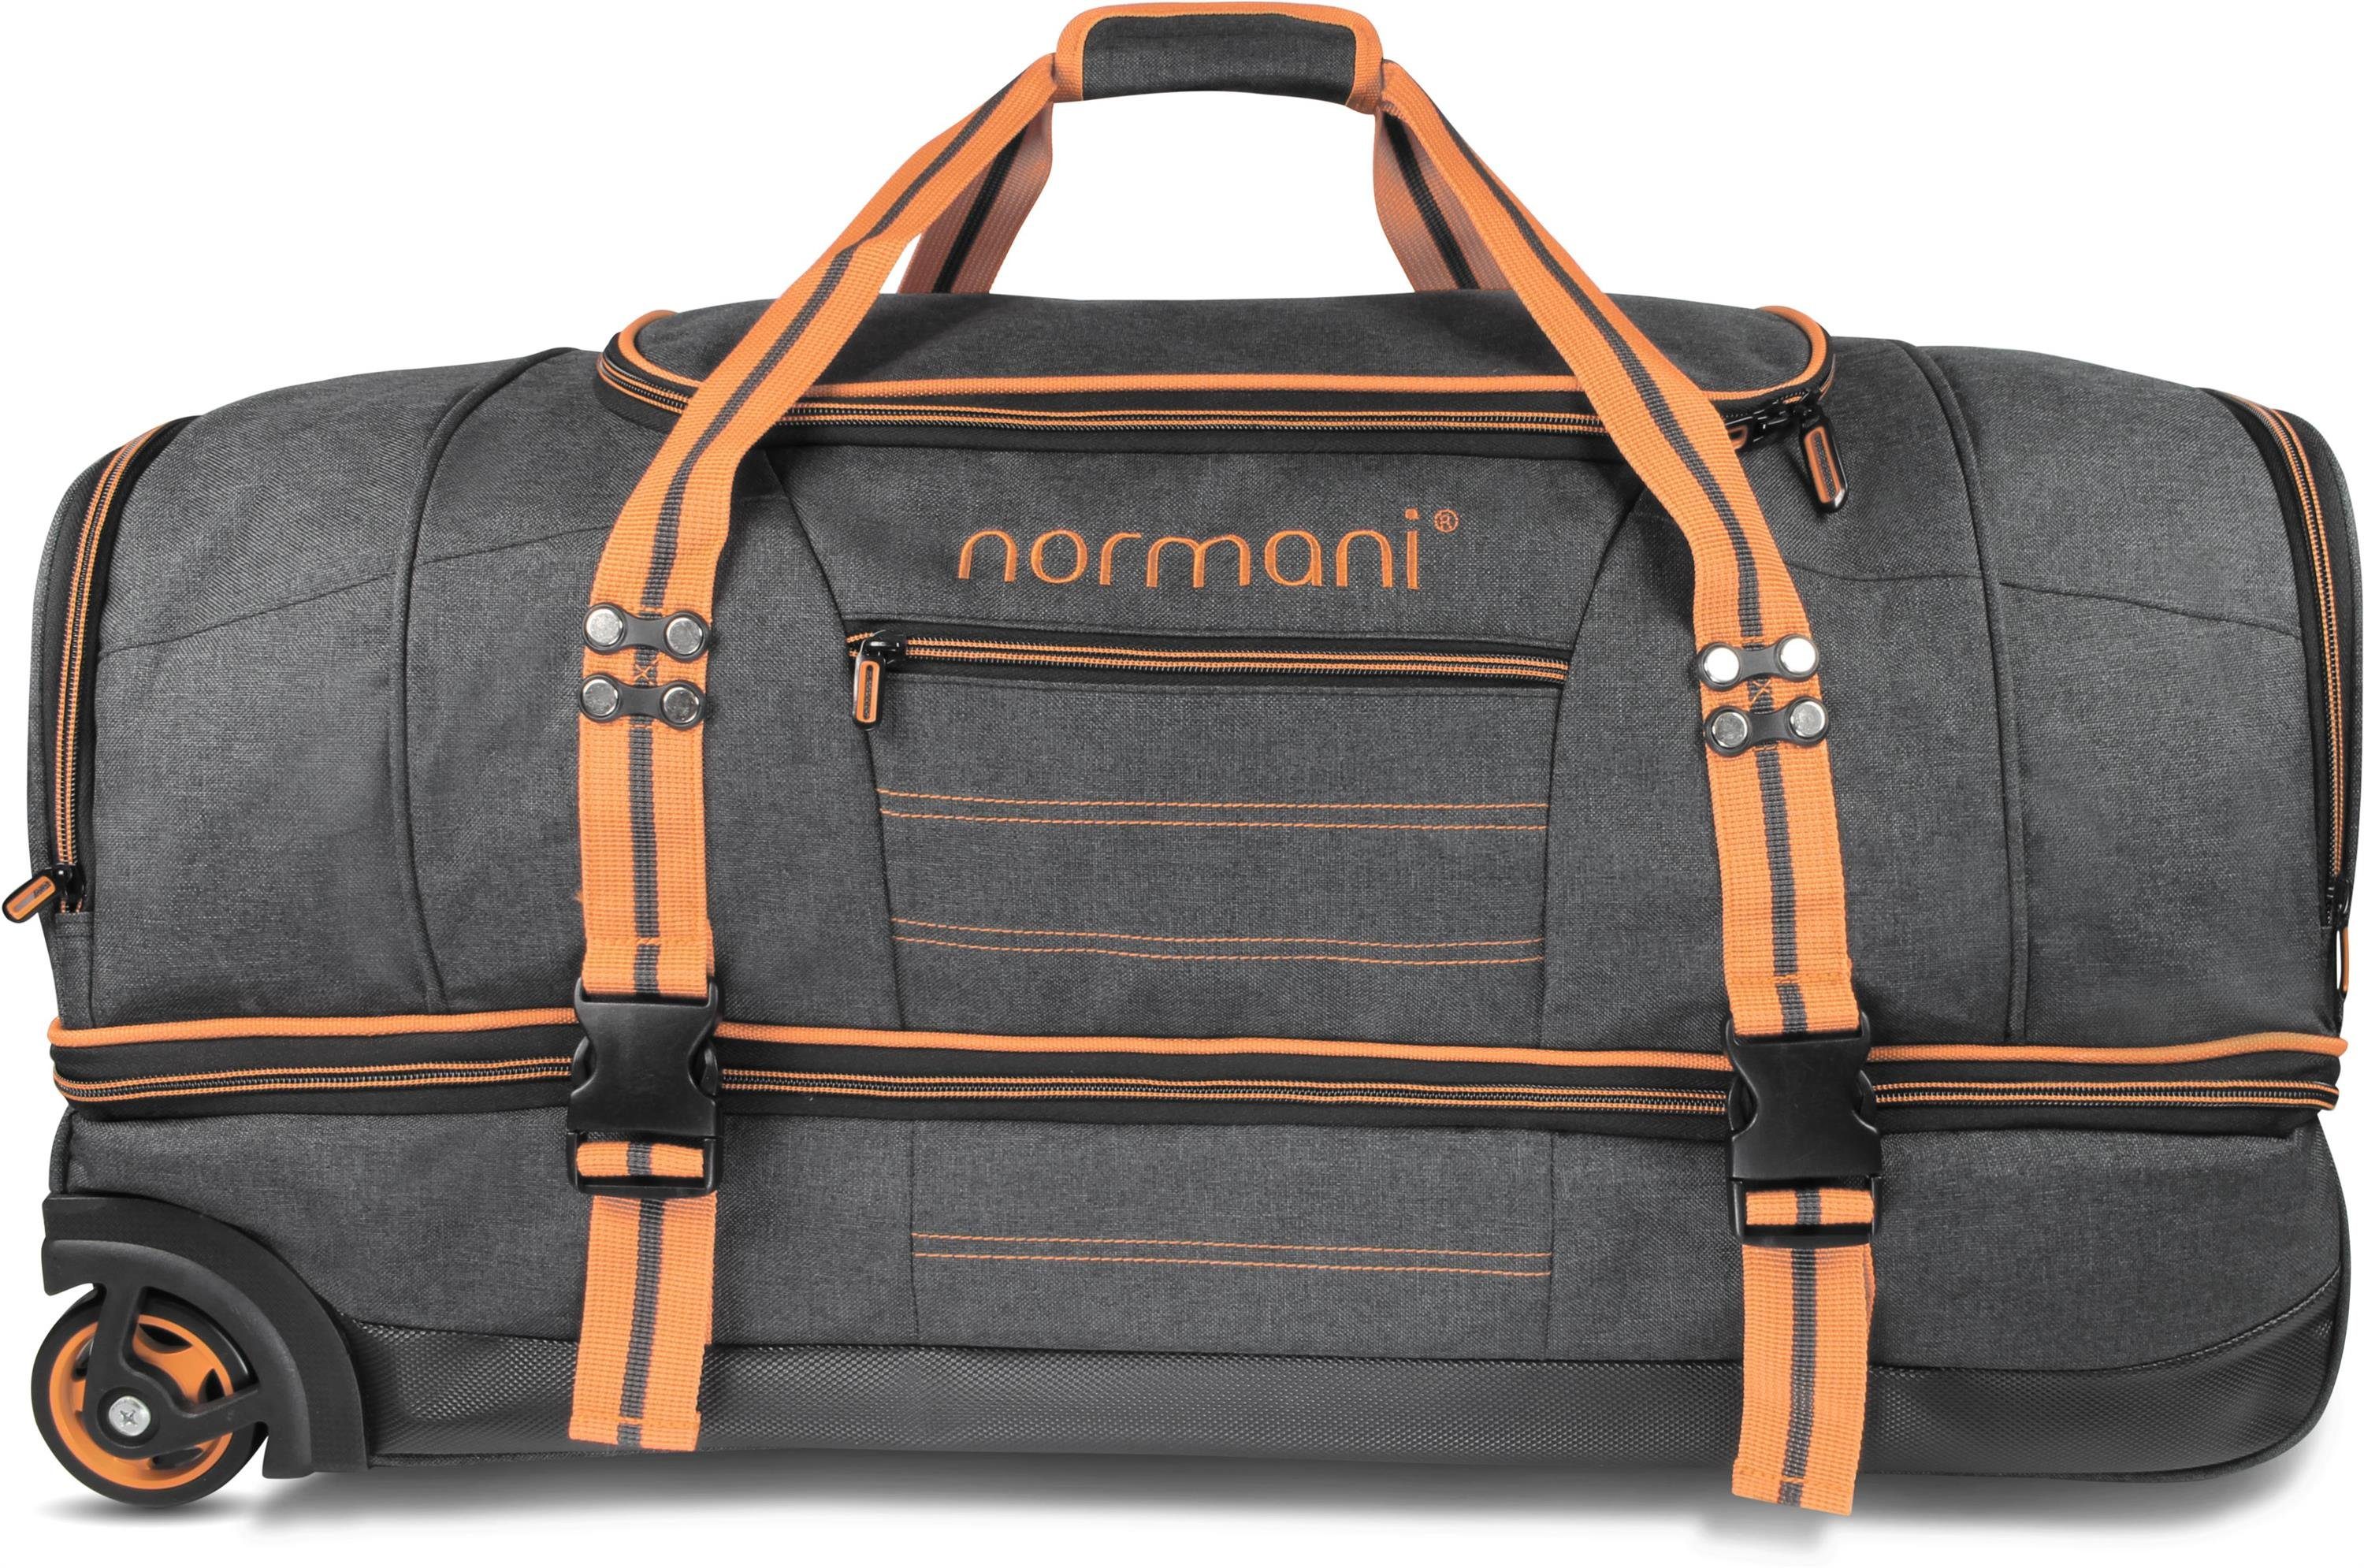 Fächern 5 90 und Orange Trolley Reisetasche mit Rollen 90, Reisetasche normani Kompass l